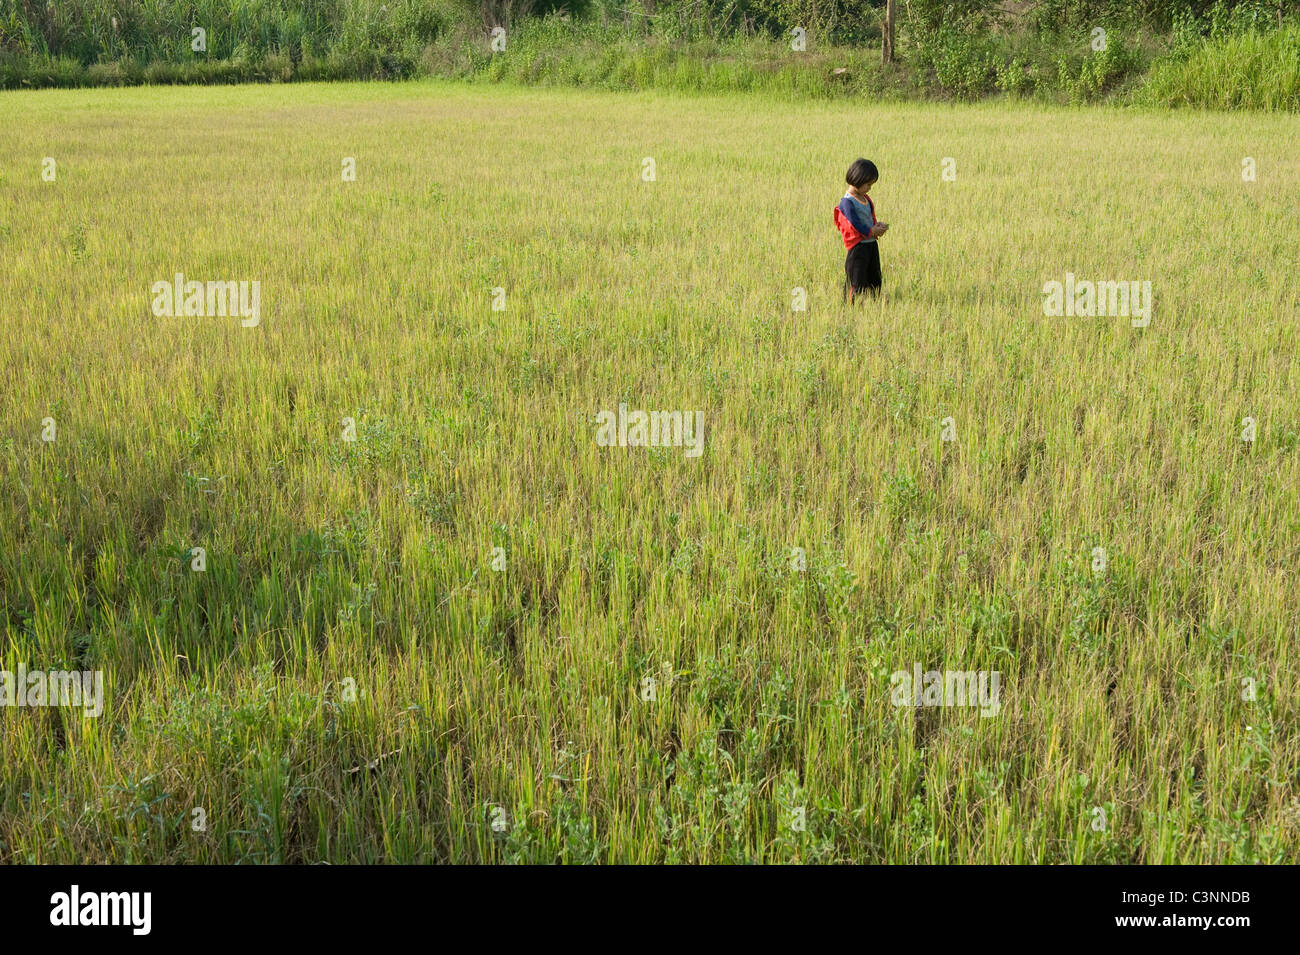 Une jeune fille thaïe dans un champ de riz nouvellement plantés dans le Nord Est de la Thaïlande Banque D'Images